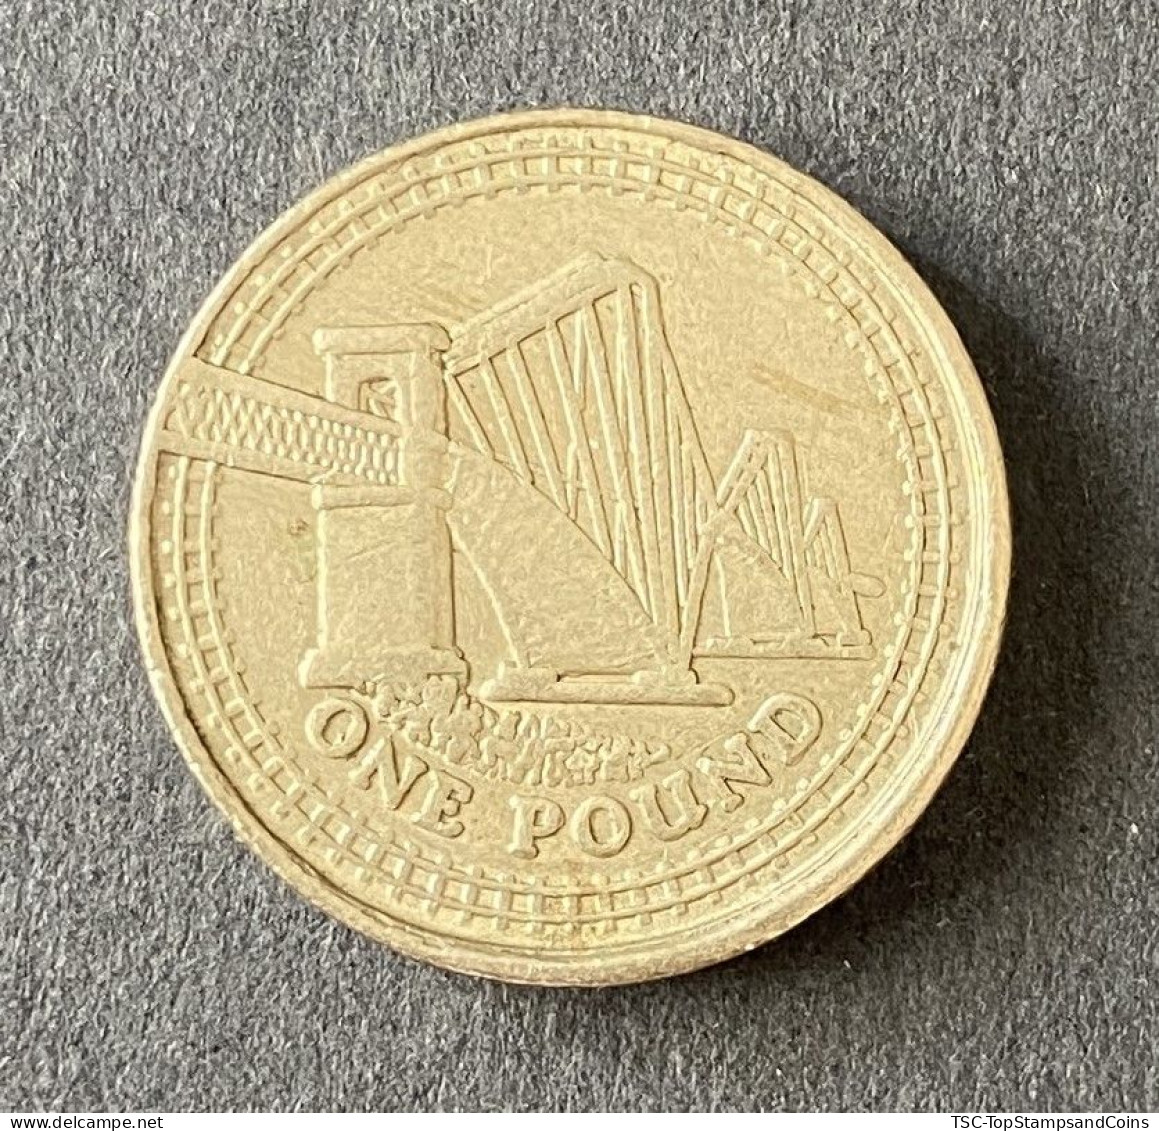 $$GB900 - Queen Elizabeth II - 1 Pound Coin - 4th Portrait - Forth Railway Bridge - Great-Britain - 2008 - 1 Pond